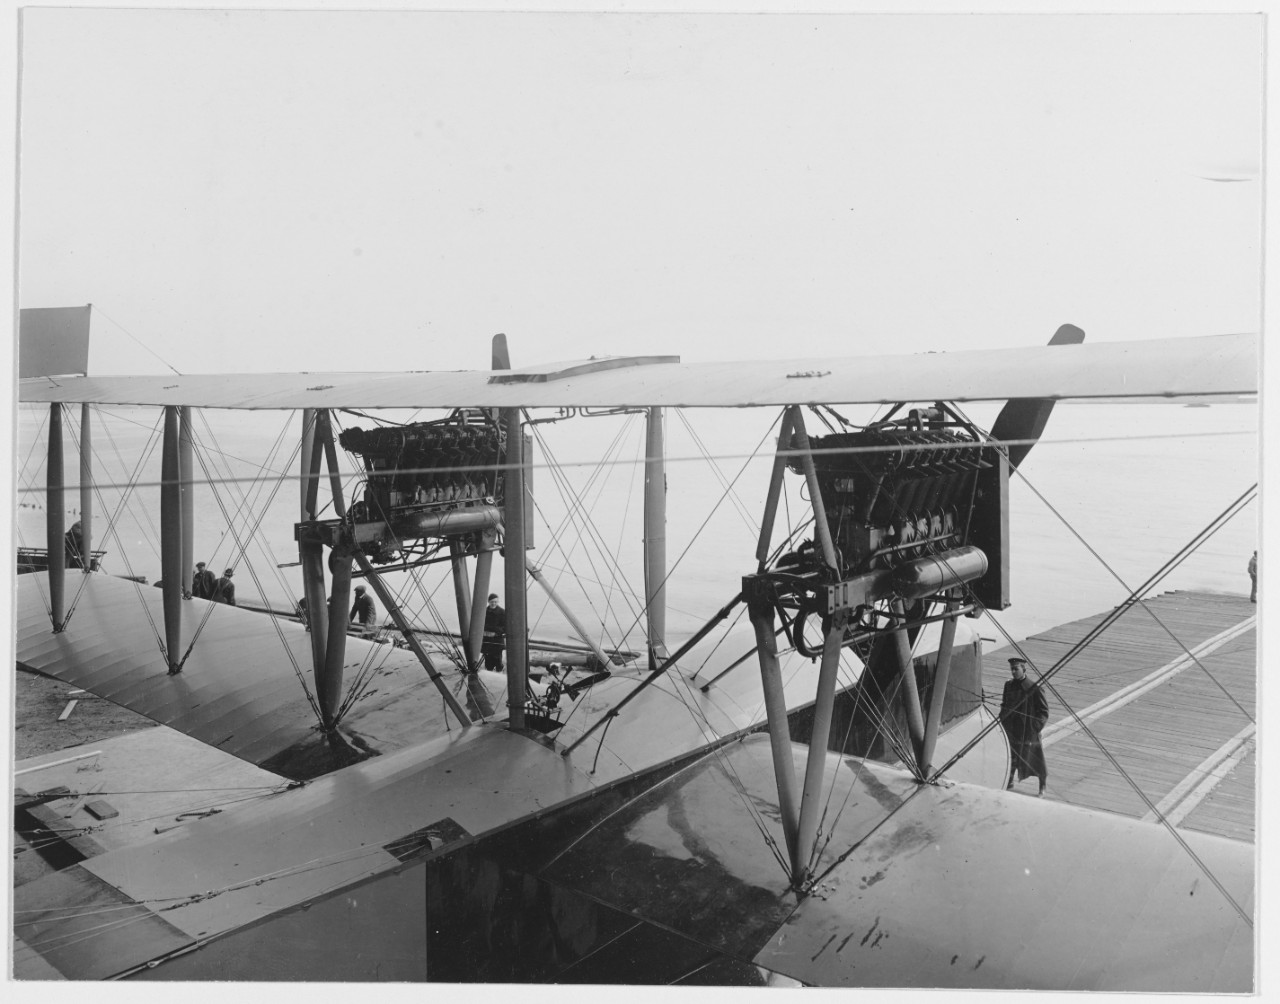 Curtiss H-16 seaplane